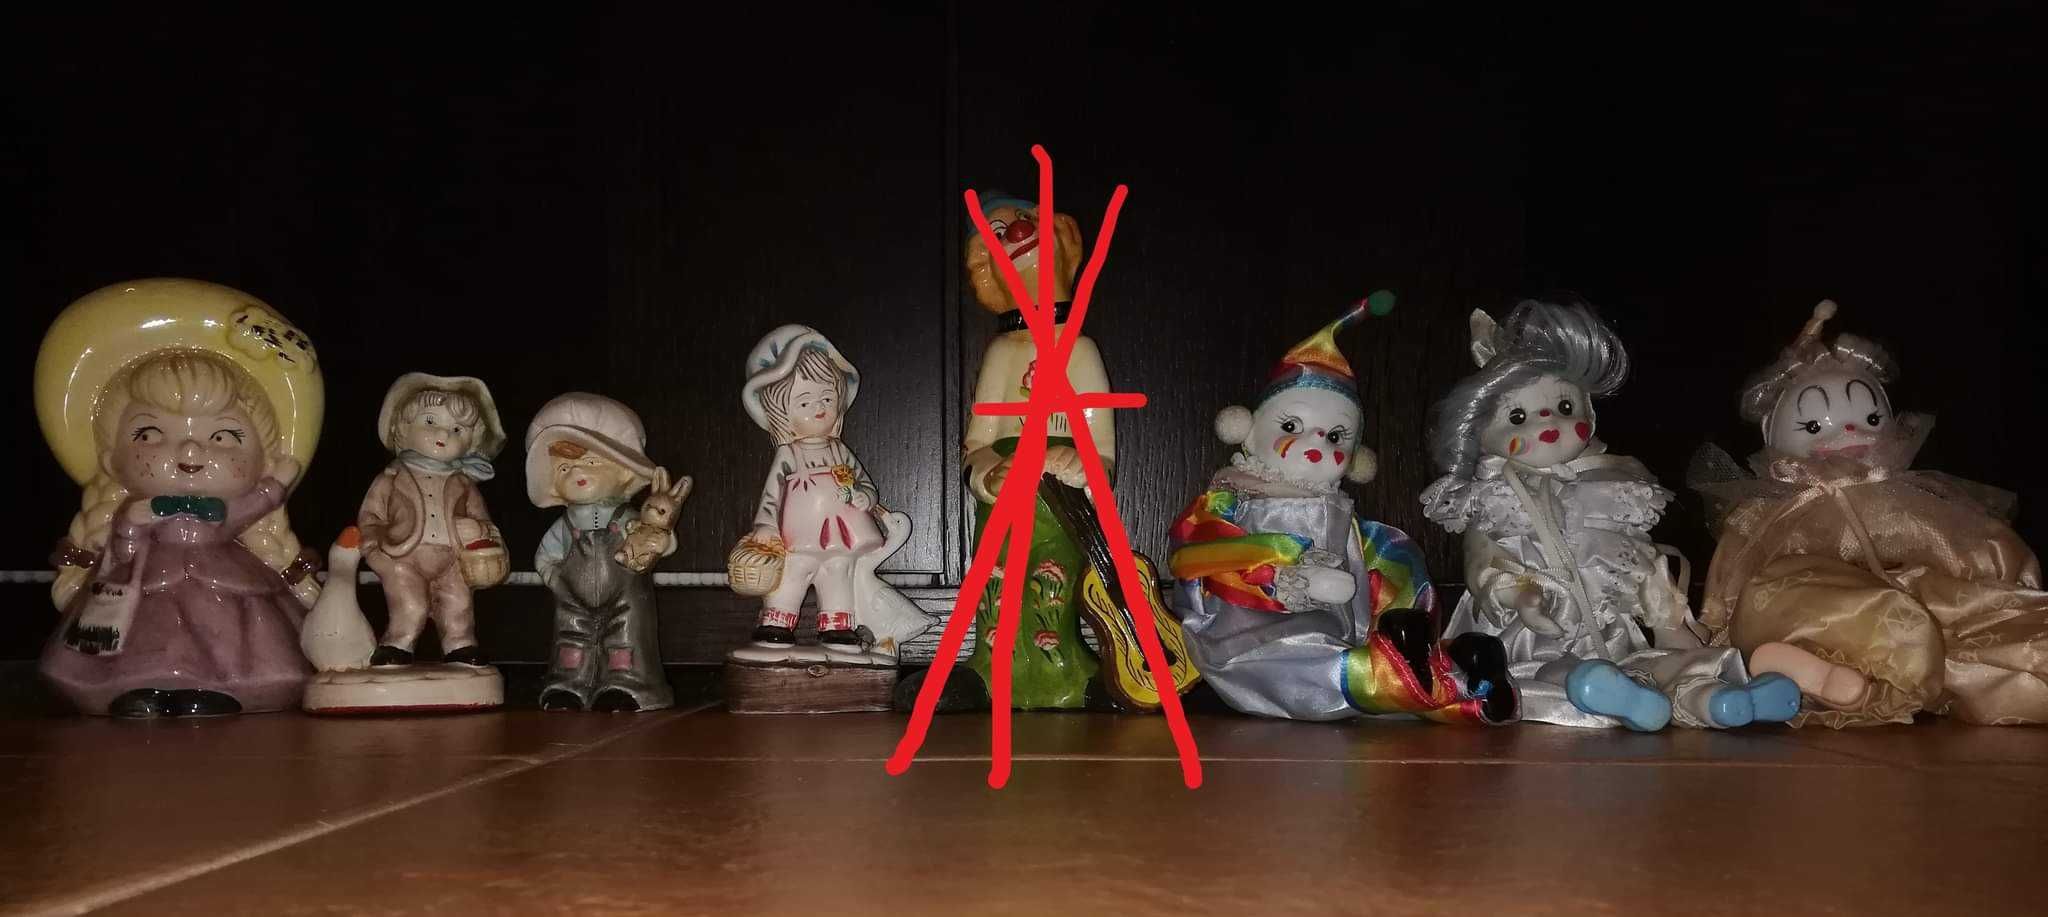 3 Palhaços / Pierrot em porcelana e 4 figuras em loiça a partir de